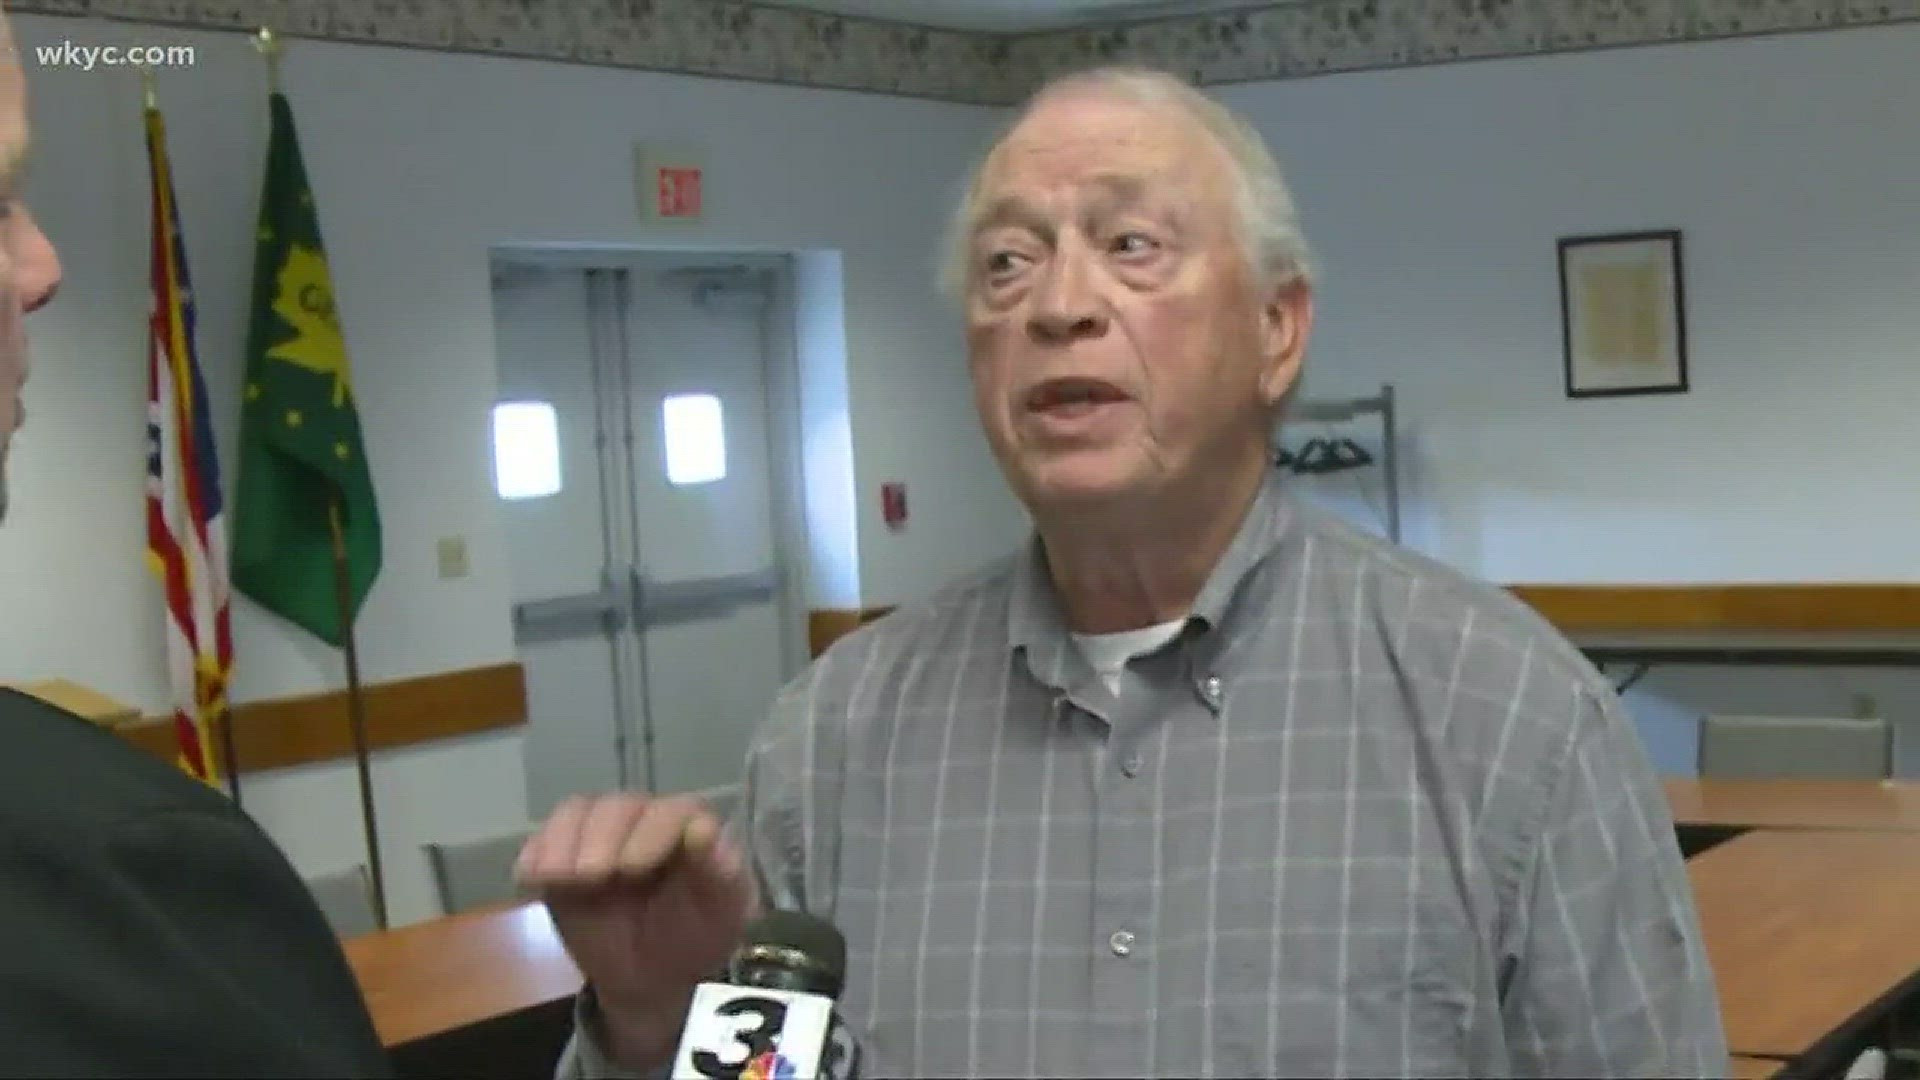 The Investigator: County whistleblower claims health board retaliated